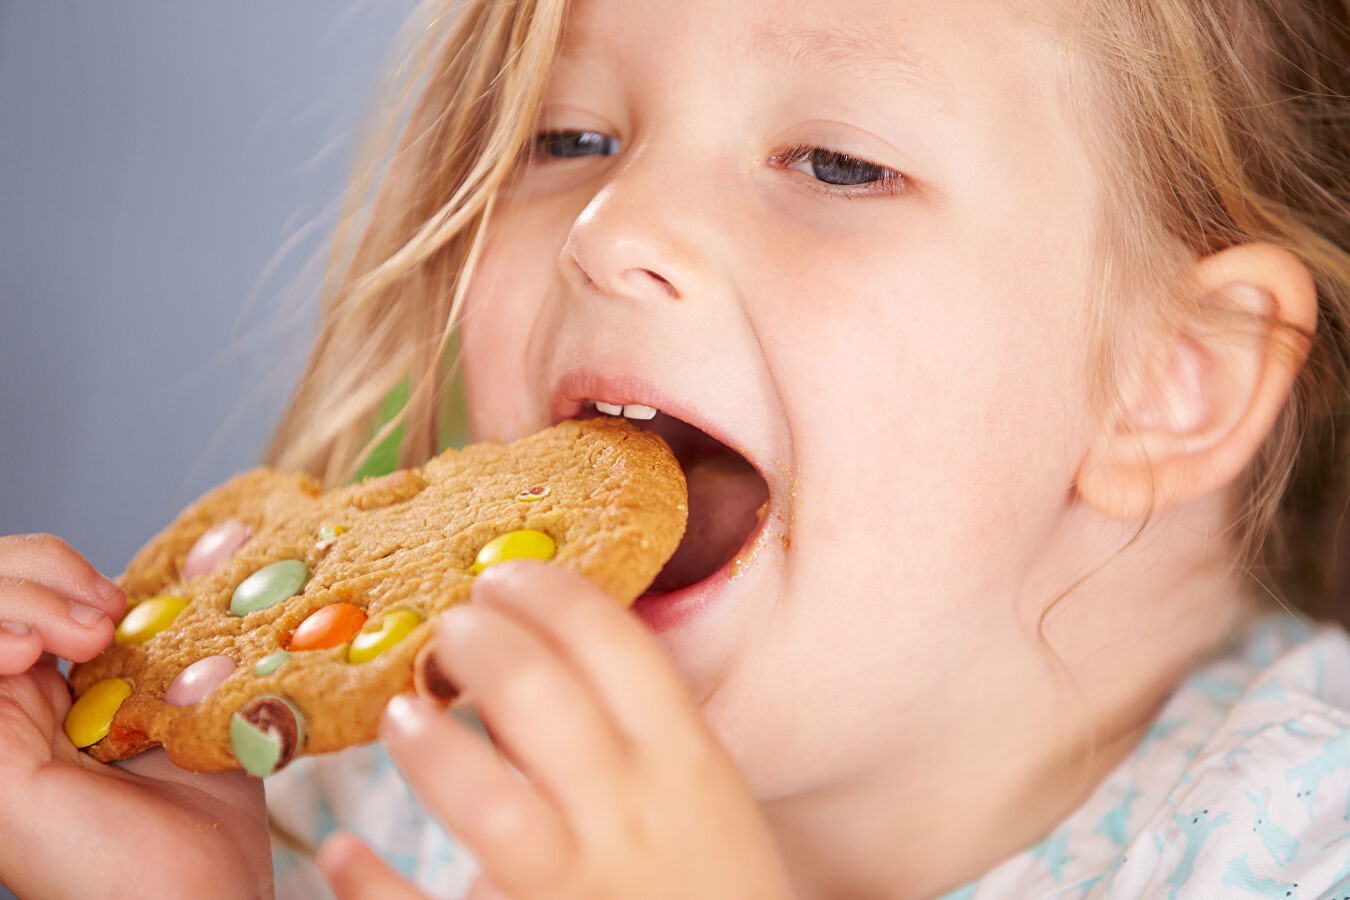 Փորձագետը խոսել է երեխաների ոչ ճիշտ սննդի վտանգների մասին